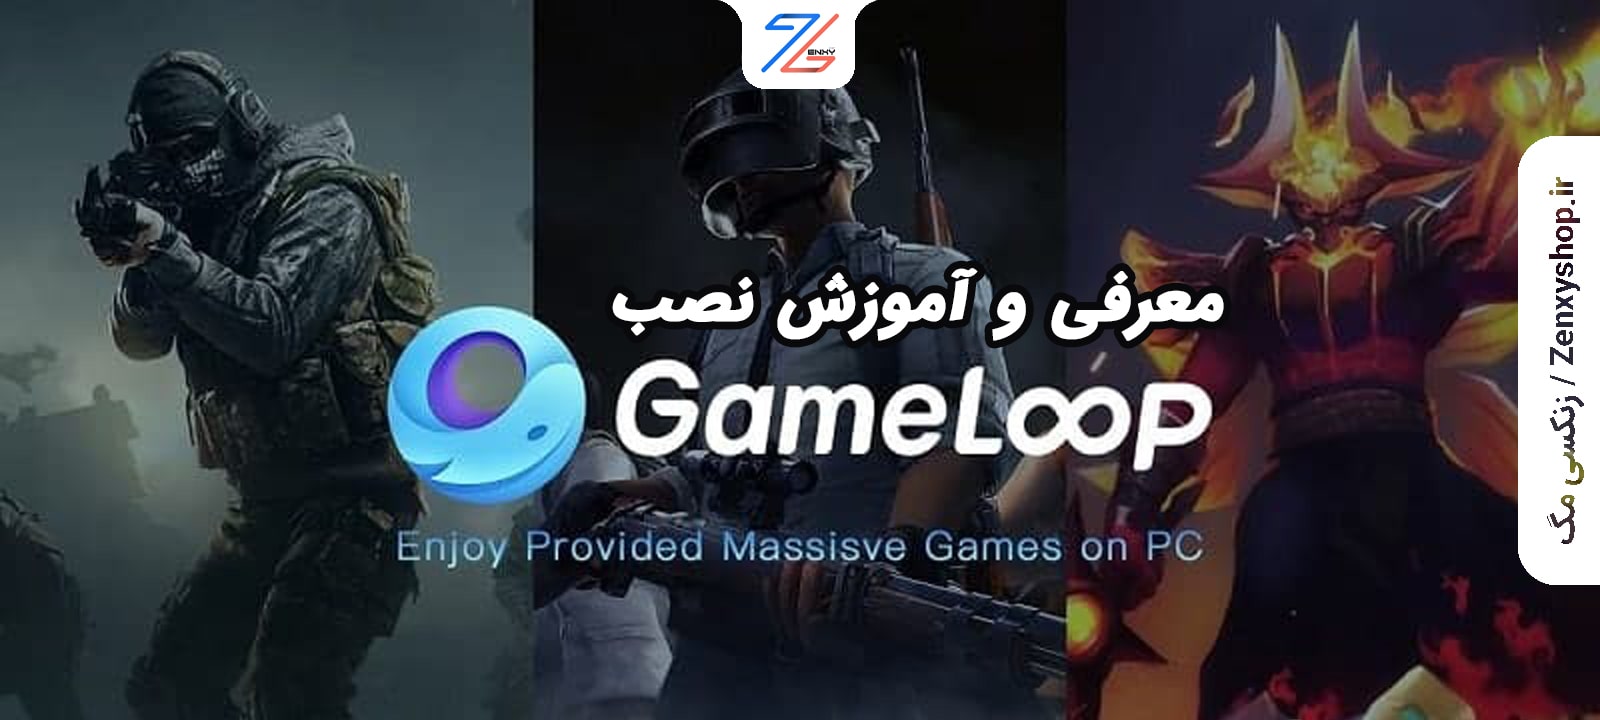 معرفی گیم لوپ (Gameloop) و آموزش نصب آن